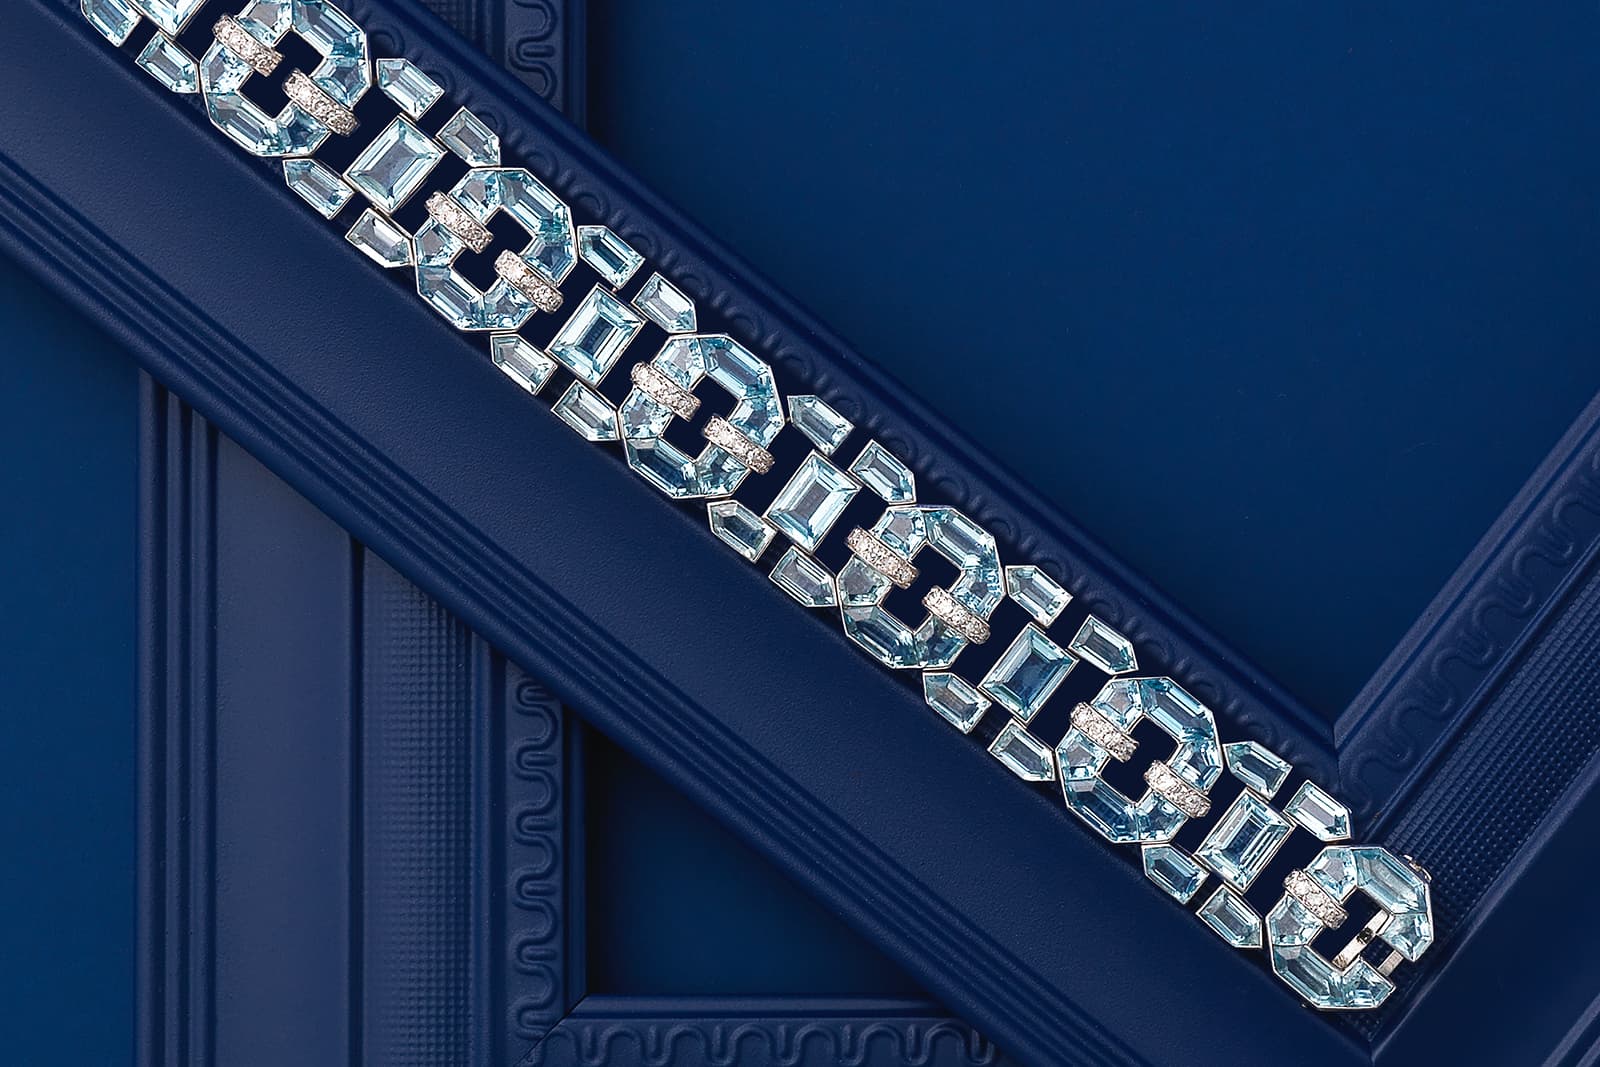 Браслет в стиле Art Deco с аквамаринами и бриллиантами - лот аукциона Bonhams London Jewels в сентябре 2021 года